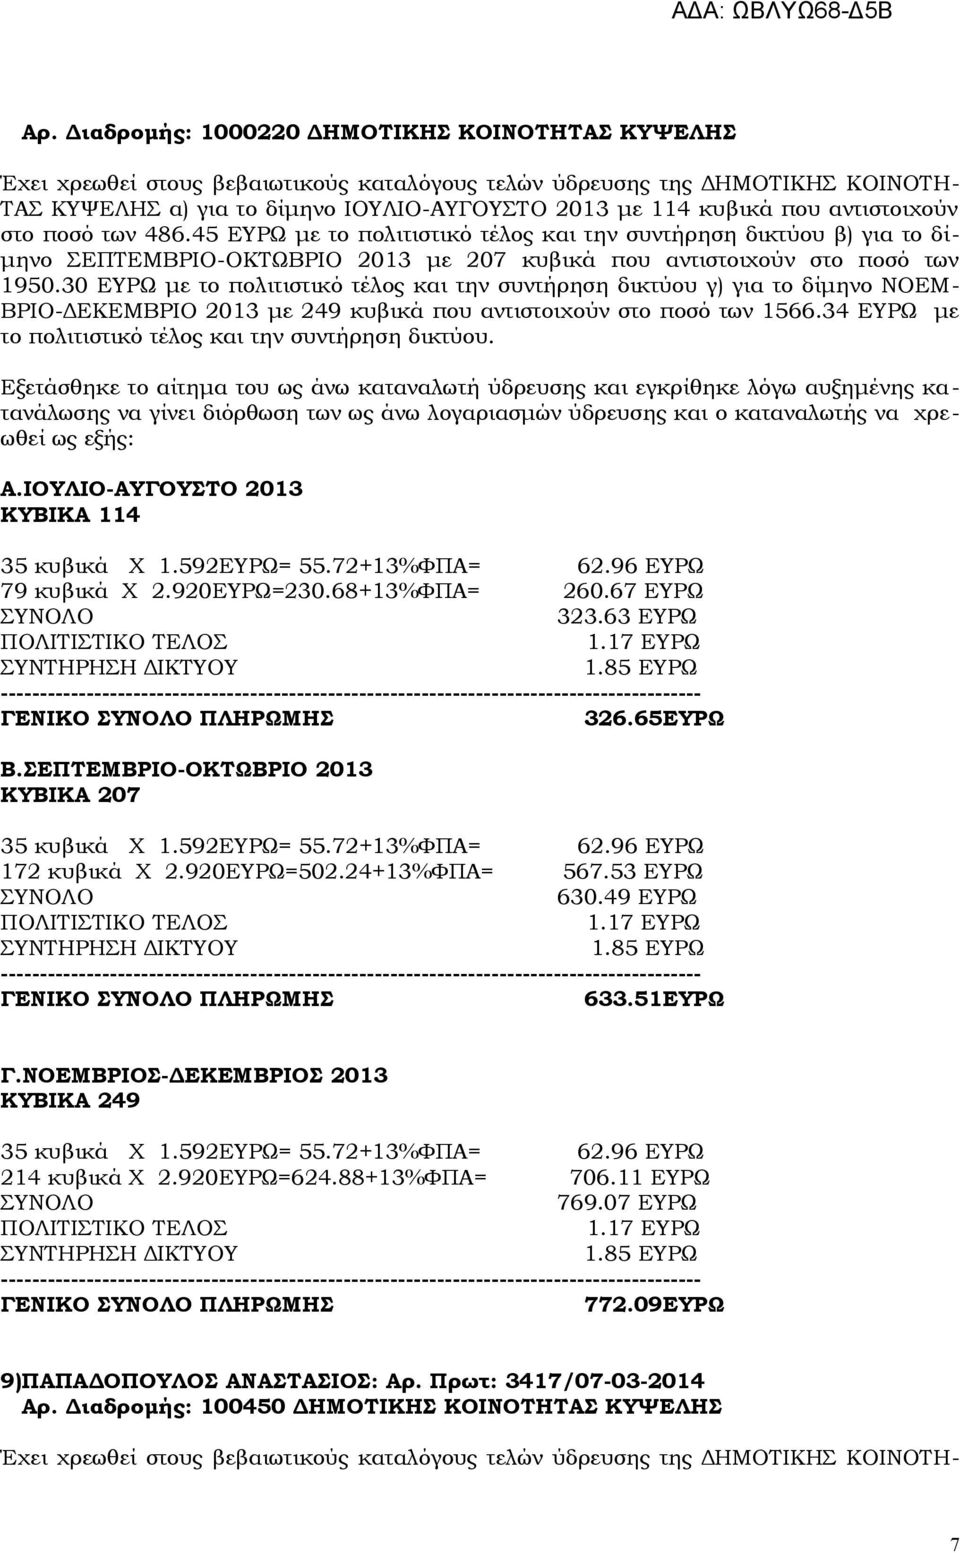 30 ΕΥΡΩ με το πολιτιστικό τέλος και την συντήρηση δικτύου γ) για το δίμηνο ΝΟΕΜ- ΒΡΙΟ-ΔΕΚΕΜΒΡΙΟ 2013 με 249 κυβικά που αντιστοιχούν στο ποσό των 1566.